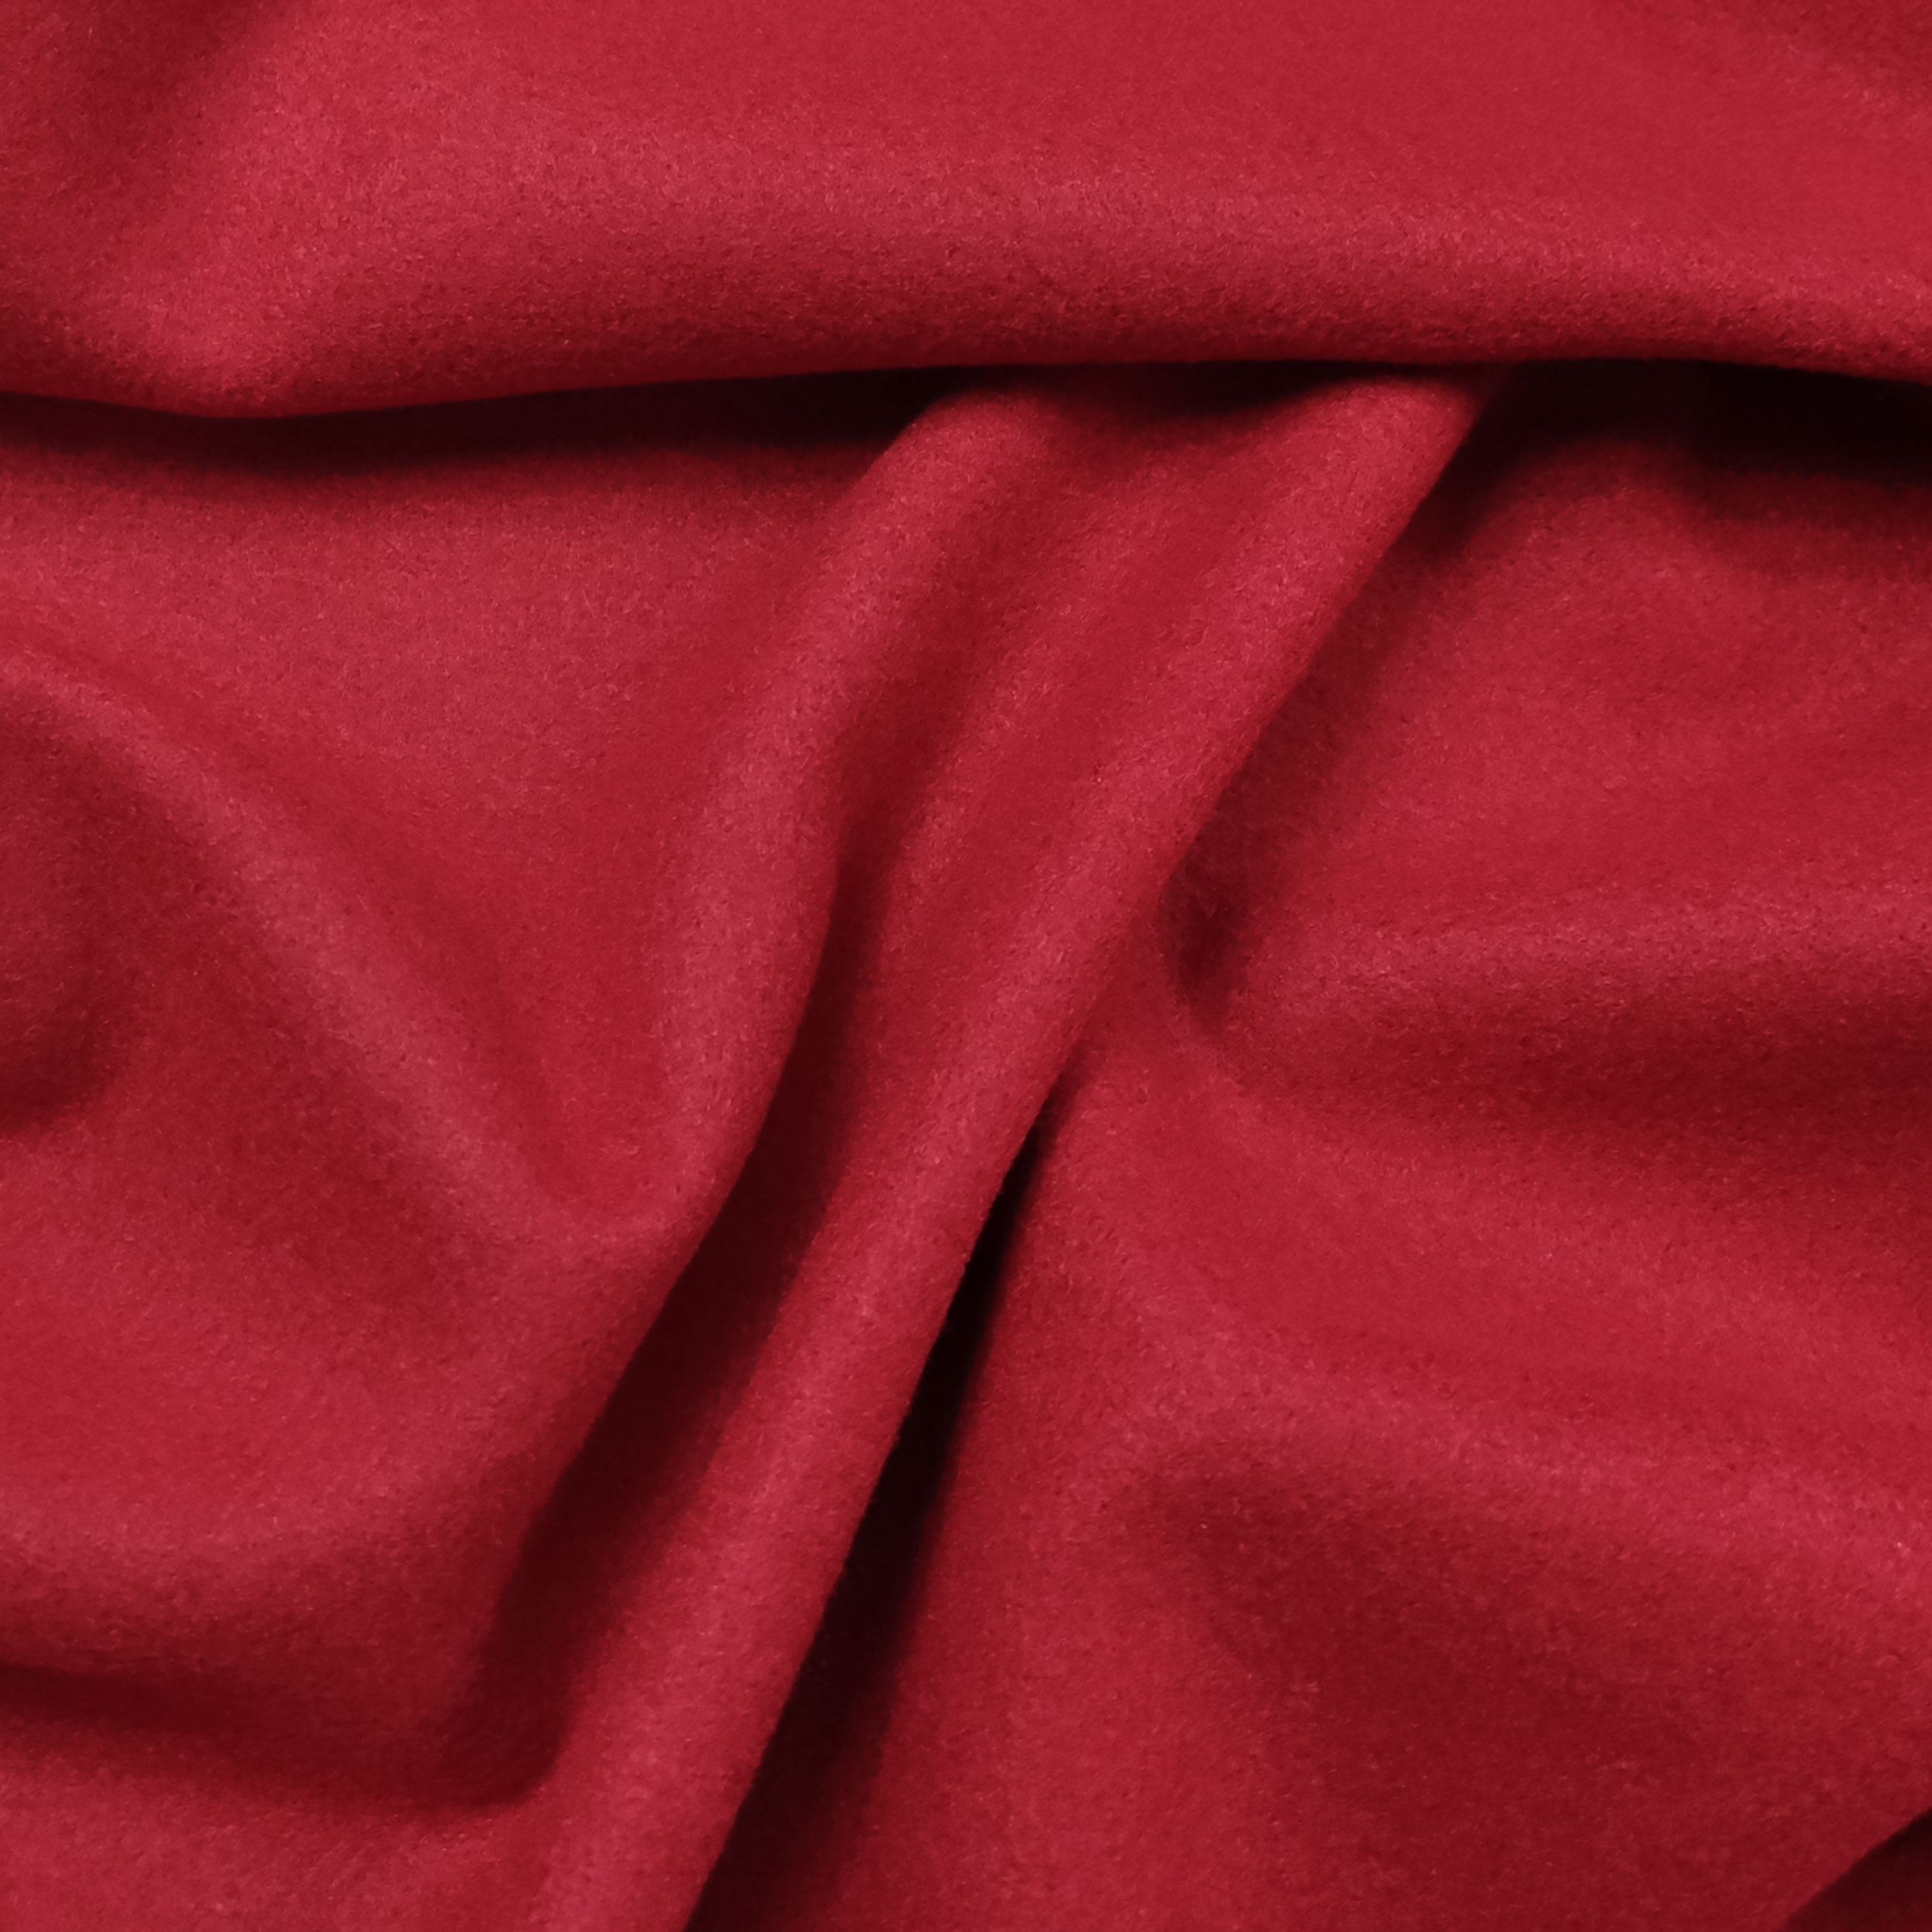 tessuto-cappotto-rosso